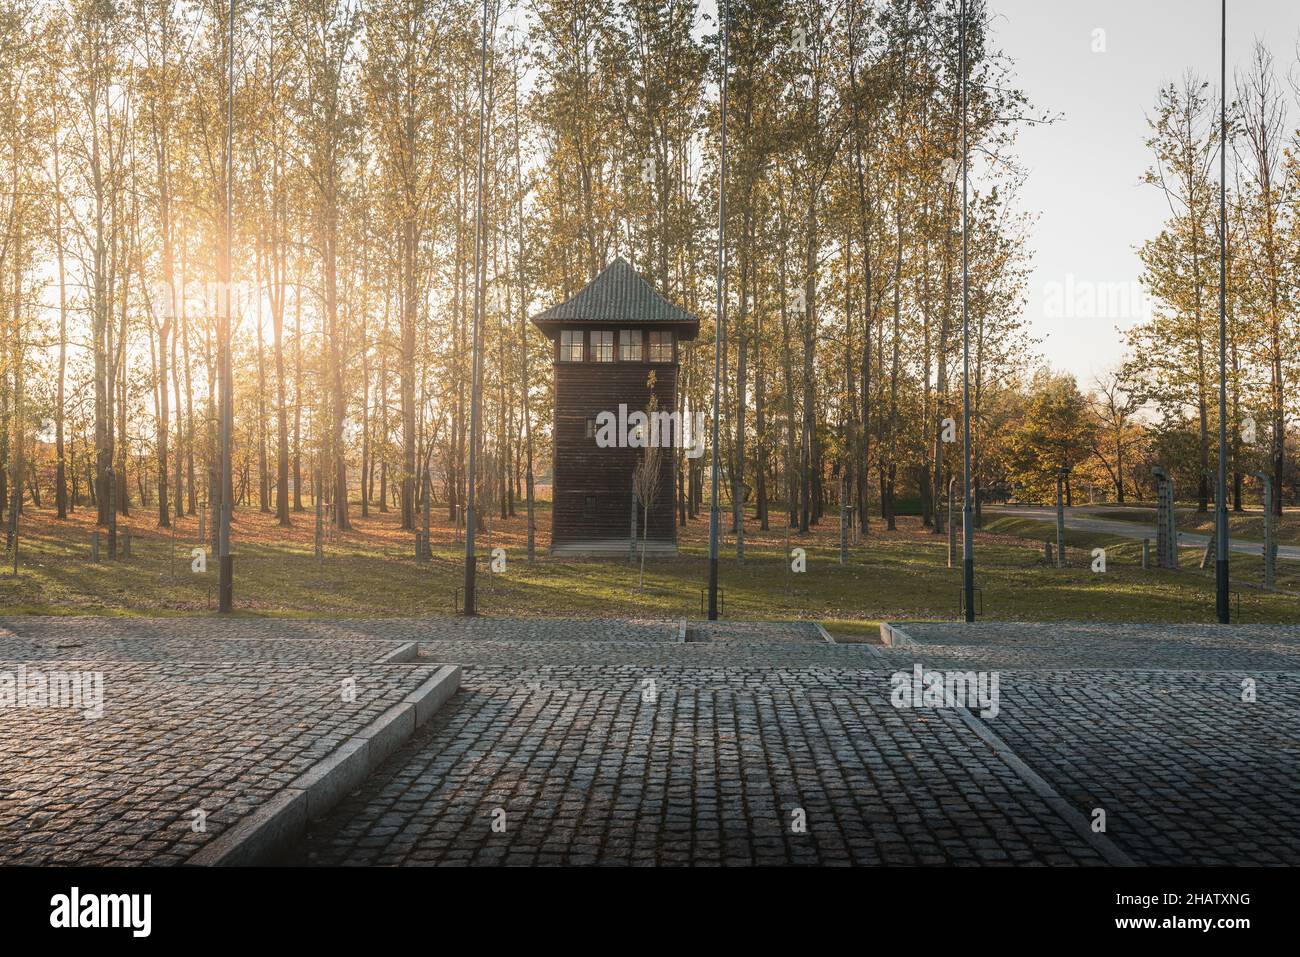 Tour de guet à Auschwitz II - Birkenau, ancien camp allemand de concentration et d'extermination nazi - Pologne Banque D'Images